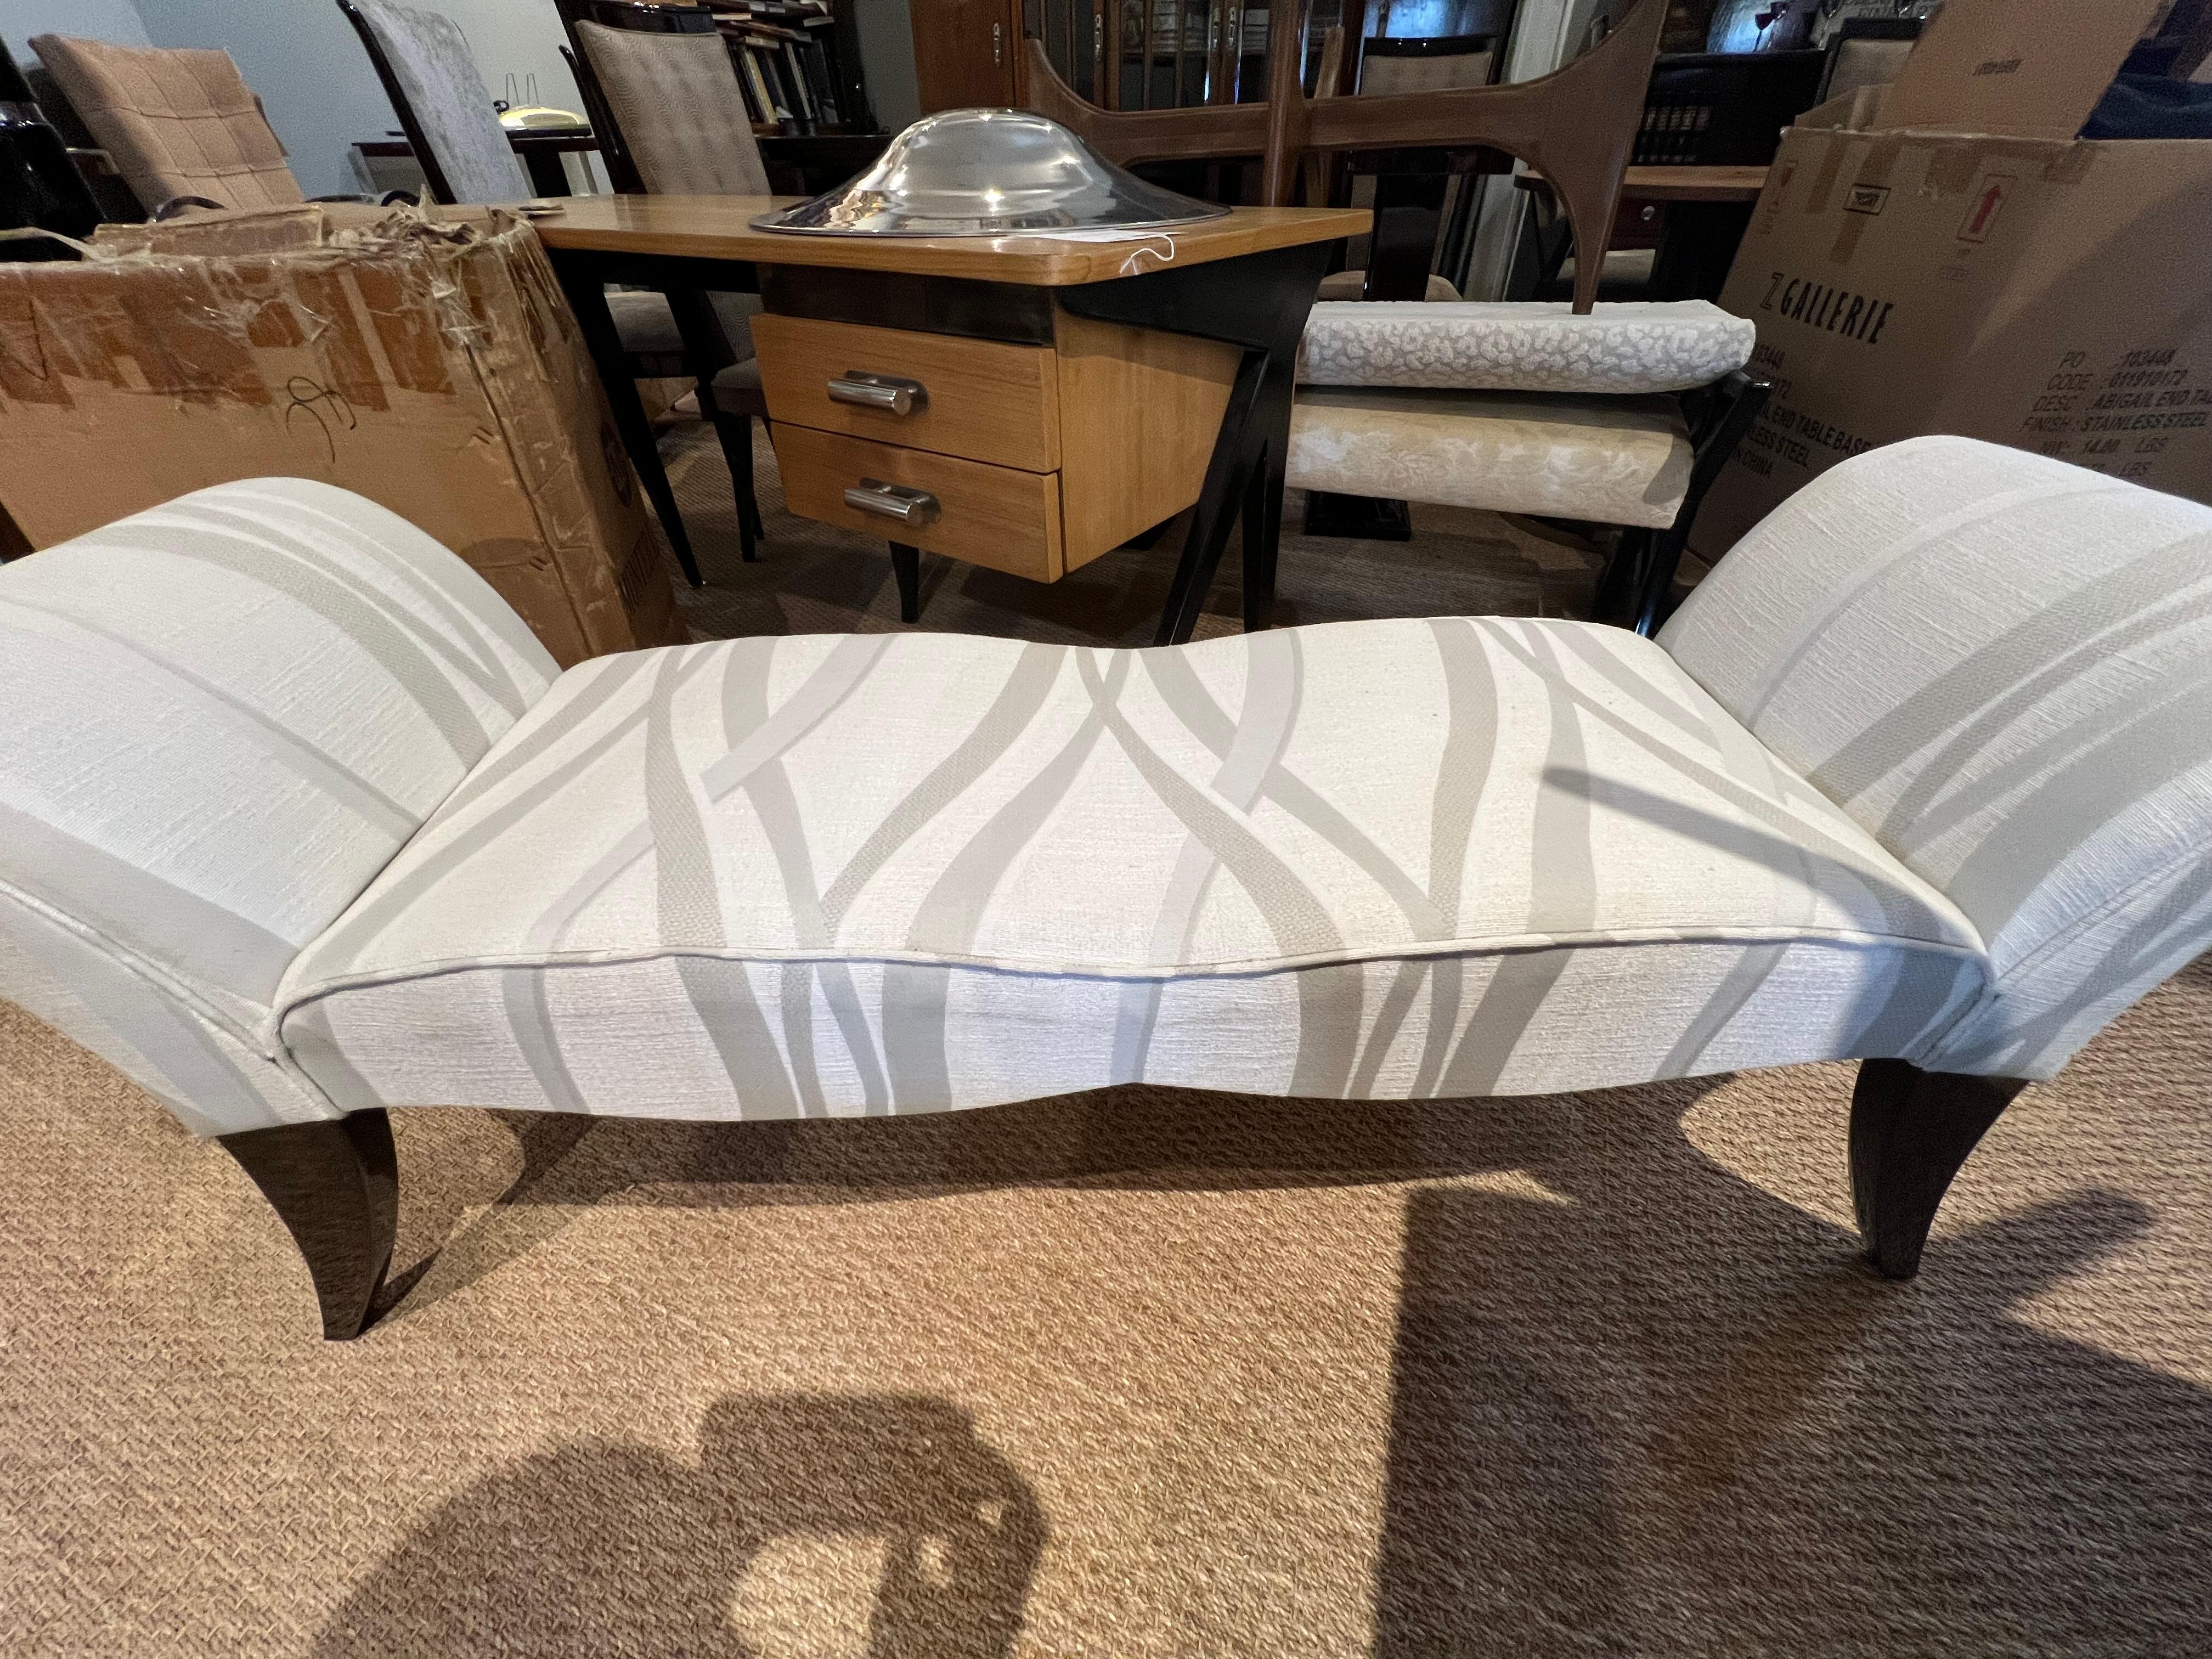 Le banc Art déco est fabriqué en bois de noyer. L'assise a été récemment retapissée dans un tissu gris clair. Il est soutenu et surélevé par les 4 pieds semi-courbes, où 2 pieds de chaque côté sont reliés l'un à l'autre, créant ainsi une forme de